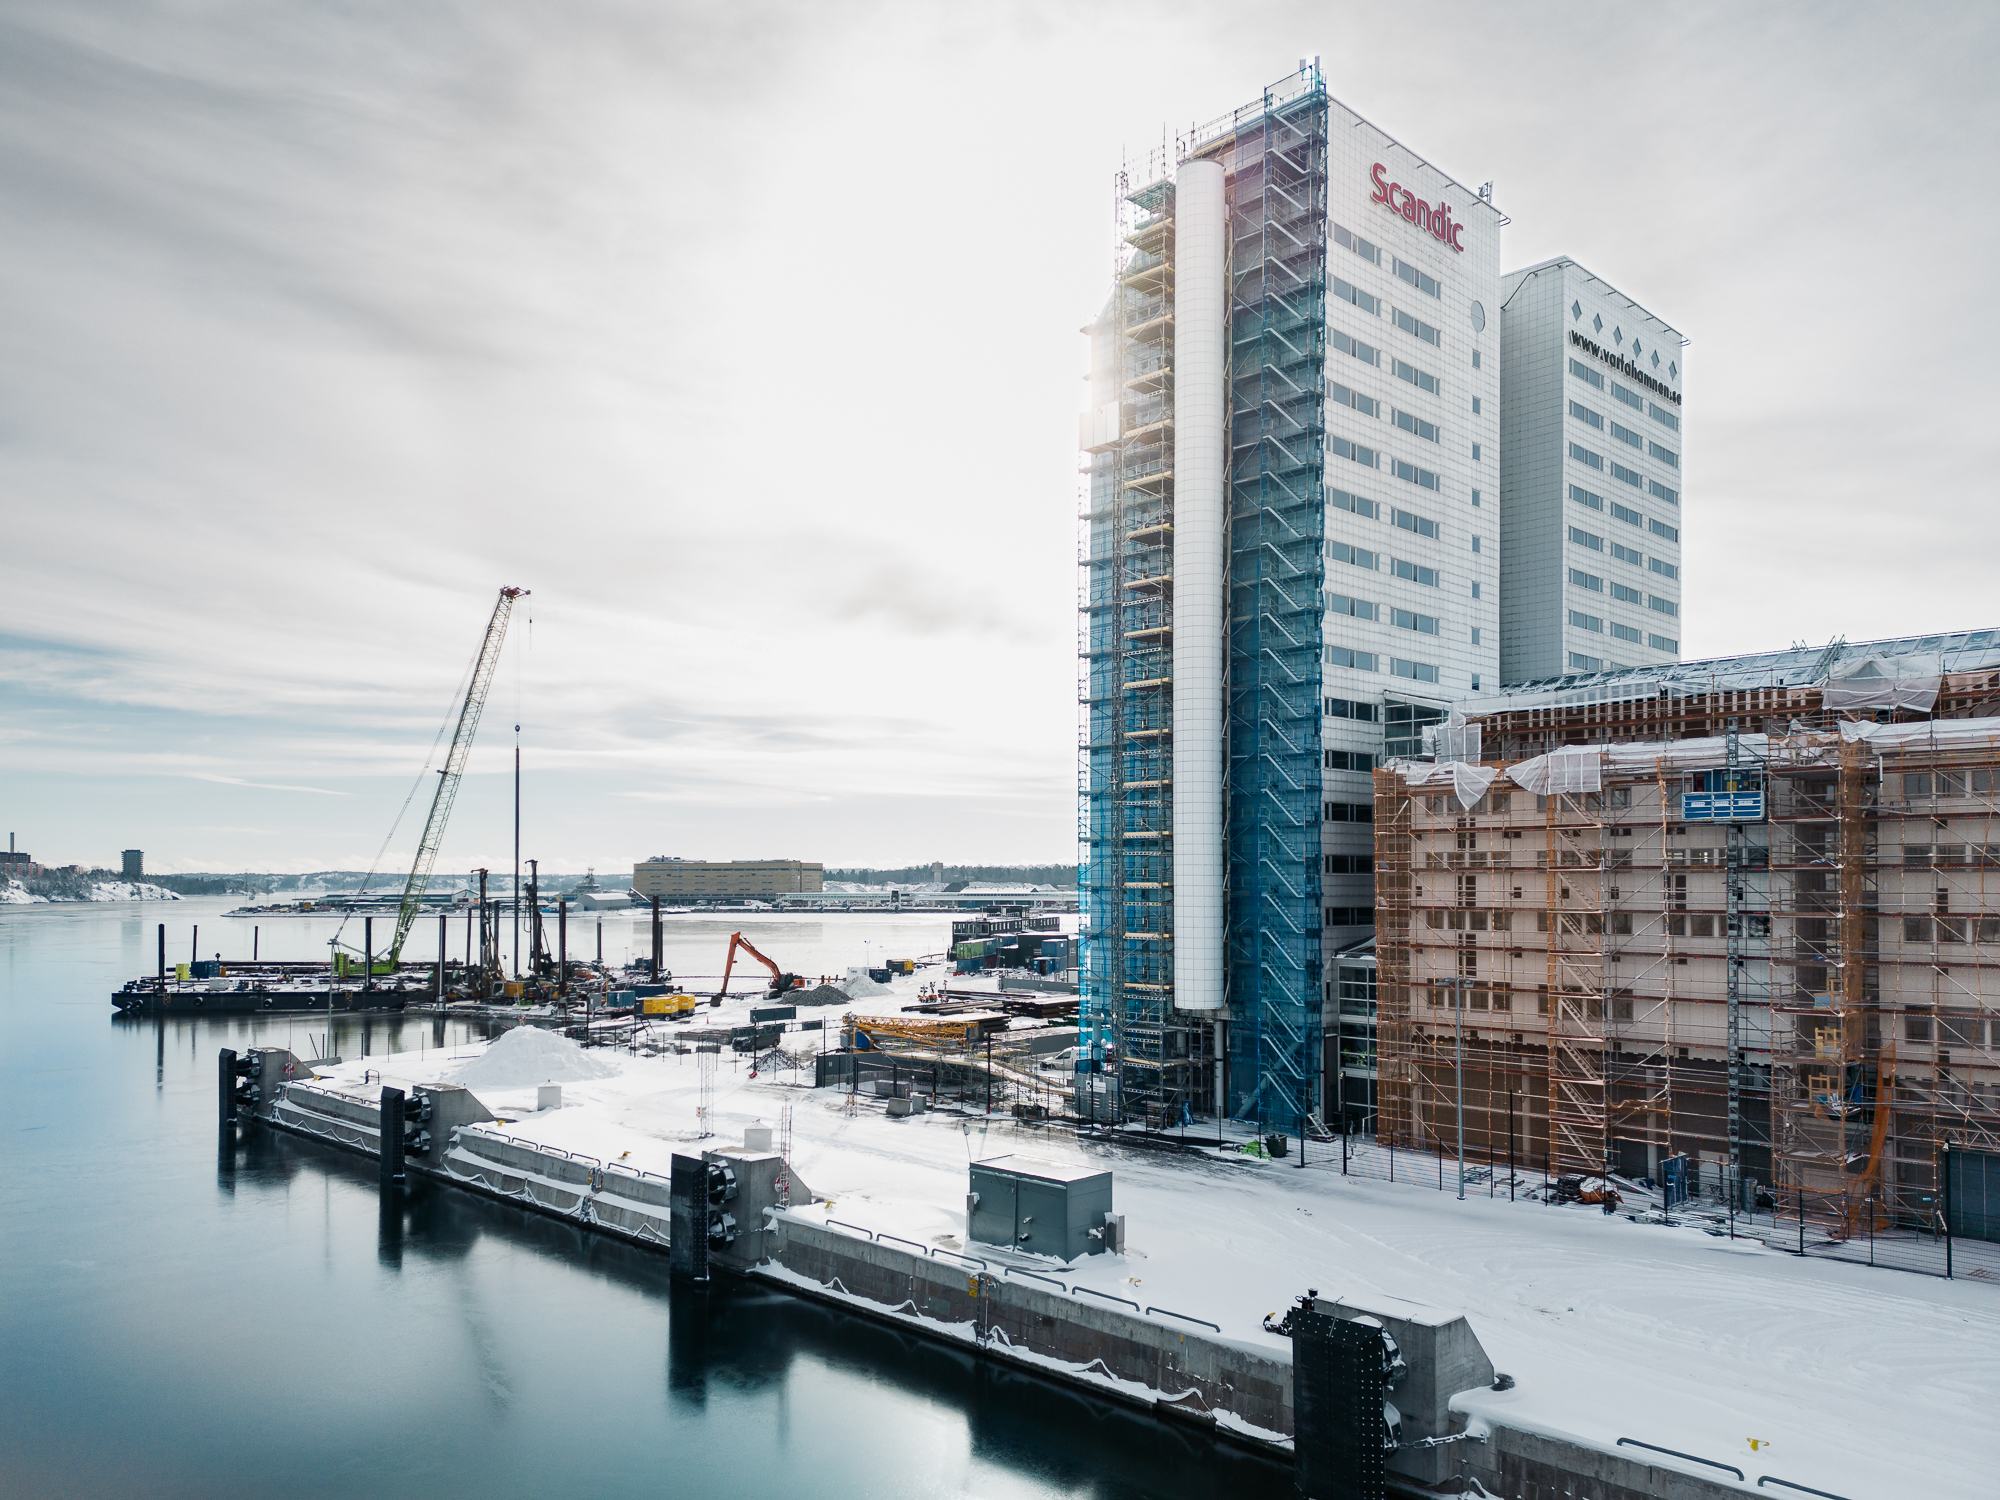 Niam väljer Novogruppen för ombyggnad av hotell i Värtahamnen Image